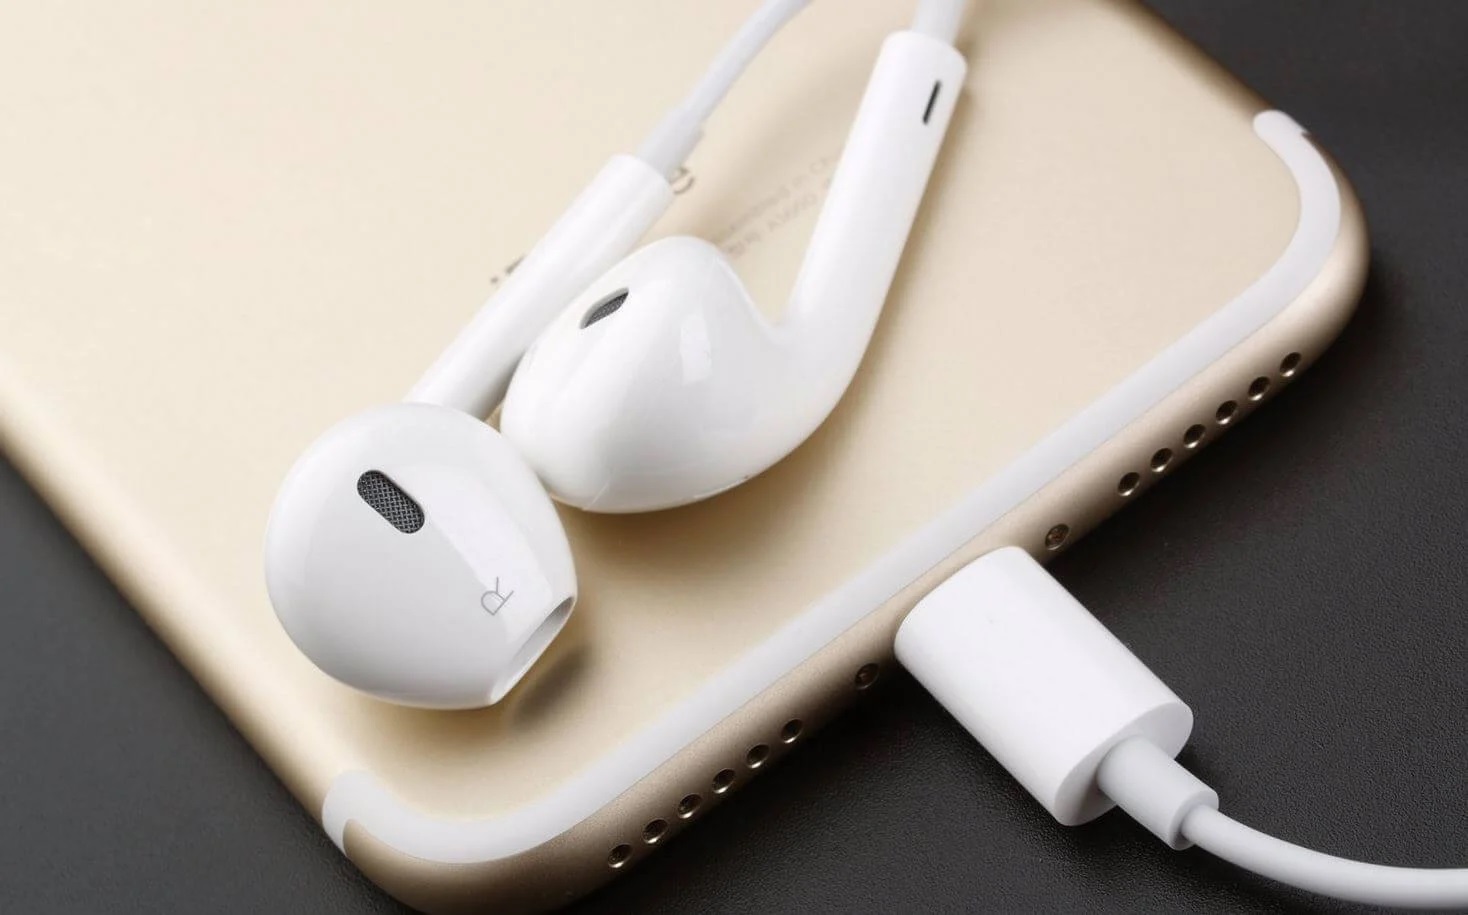 Geruchten: Apple lanceert in massa geproduceerde bedrade EarPods met USB-C koptelefoon in aanloop naar iPhone 15 release